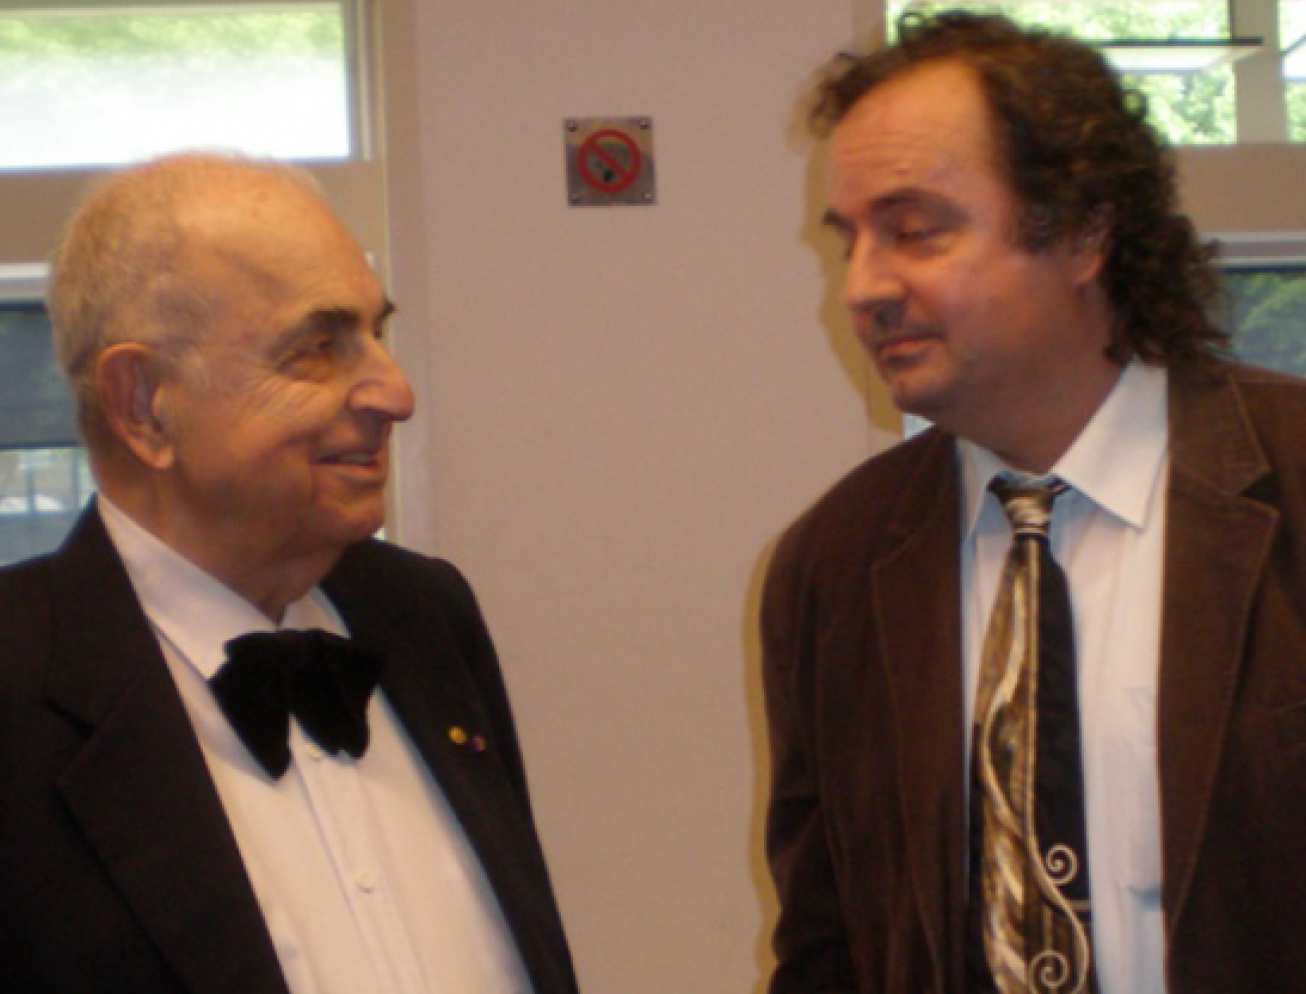 Andreas Acrivos and Serafim Kalliadasis: Two guys with ties